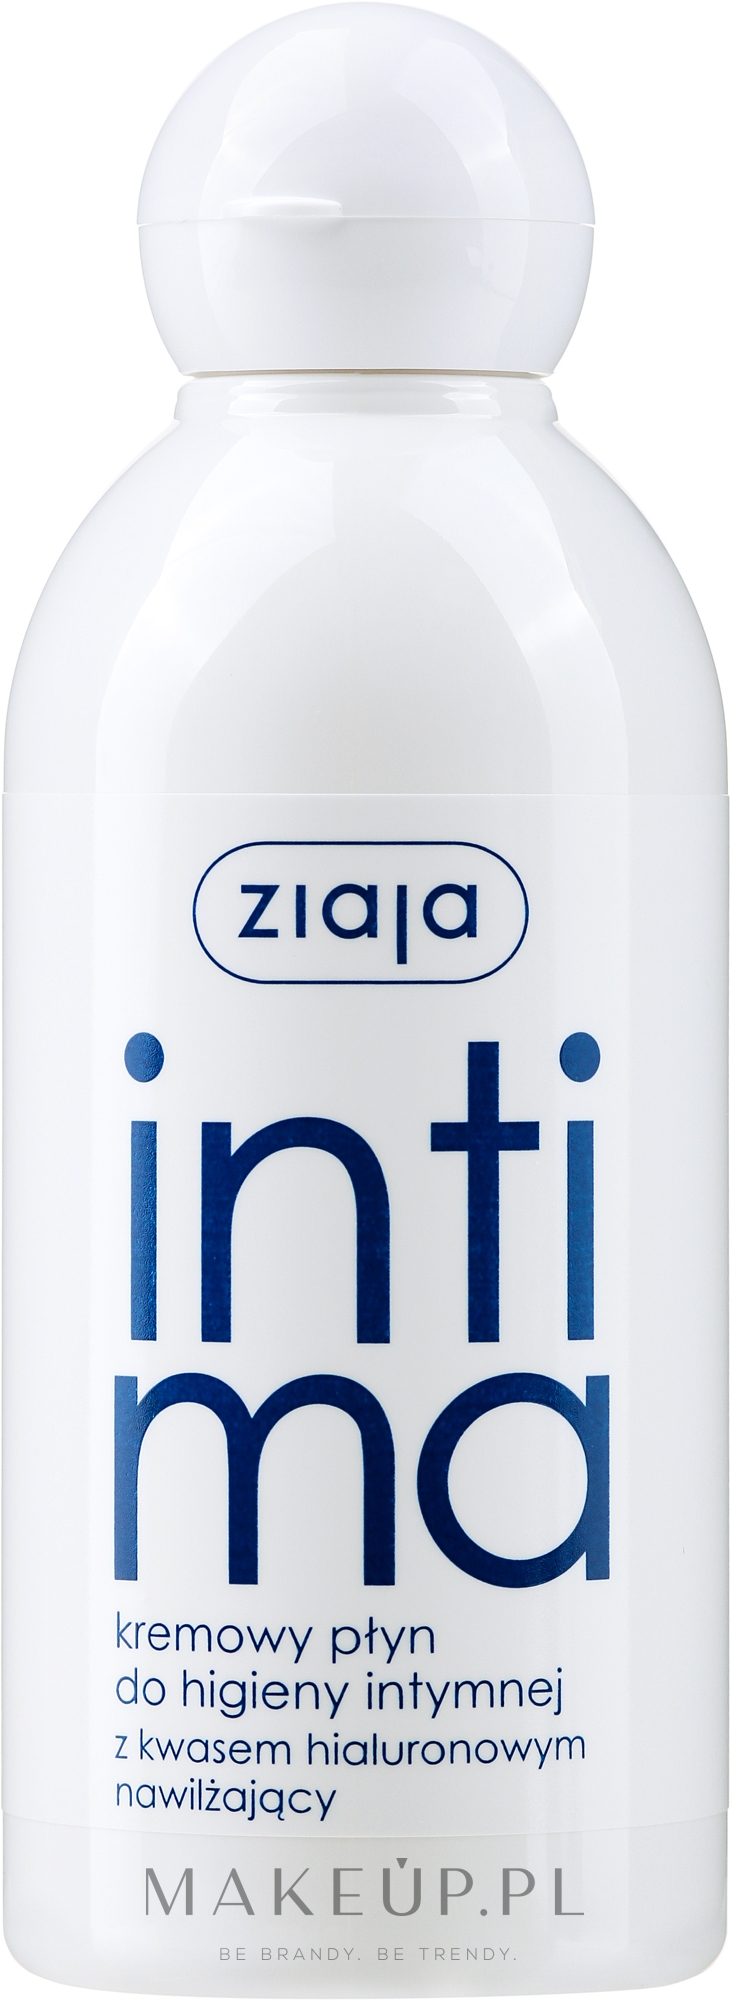 Kremowy płyn do higieny intymnej z kwasem hialuronowym - Ziaja Intima — Zdjęcie 200 ml